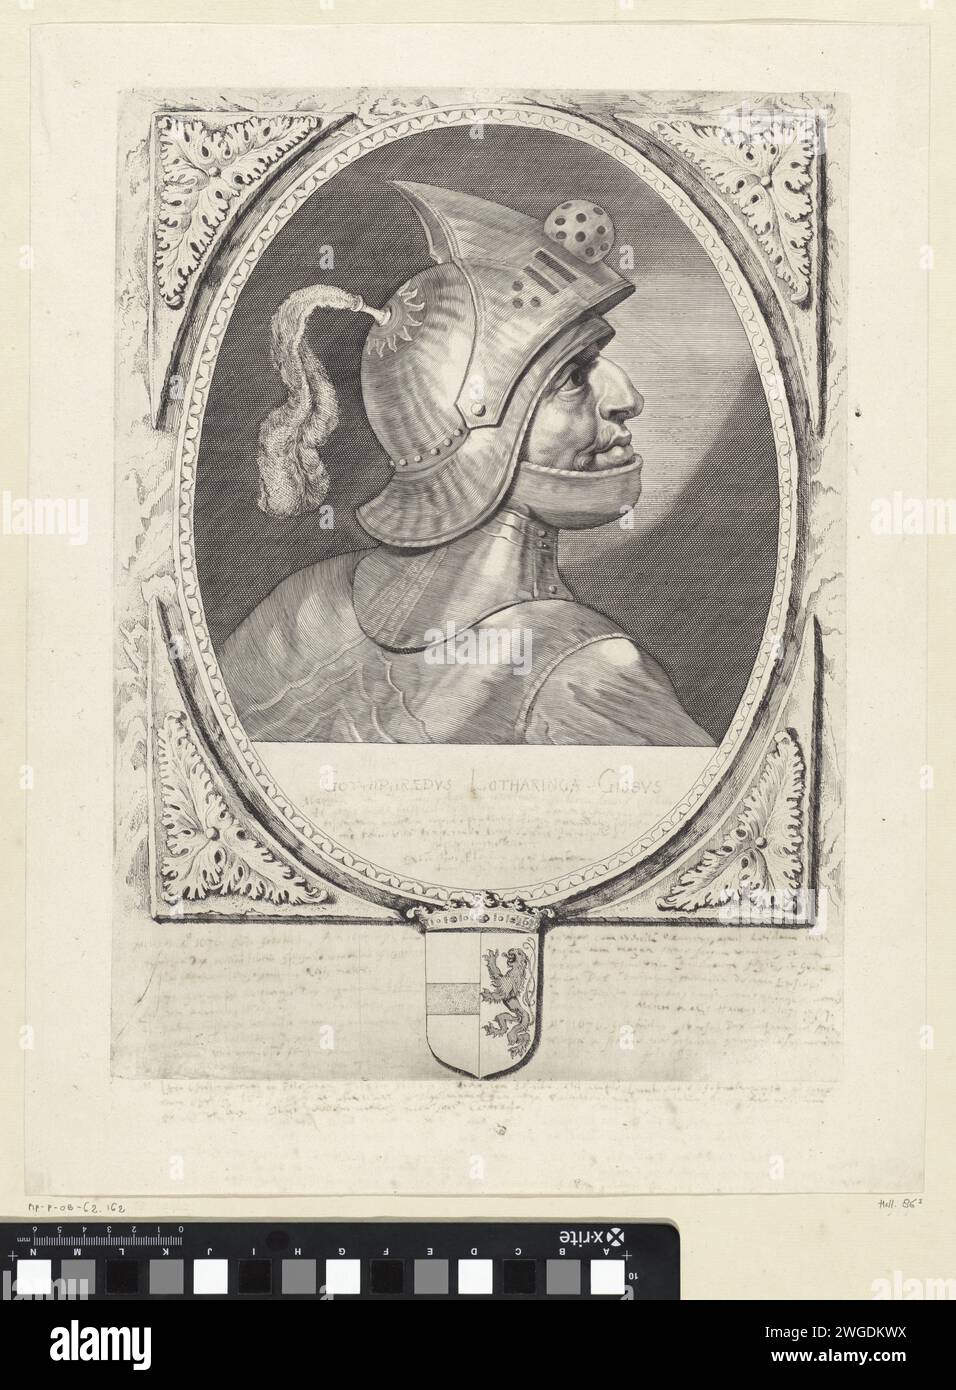 Porträt von Godfried III. Mit de Bult, Cornelis Visscher (II), 1650 Druck Godfried III. Mit der Beule, Herzog von Unterlothringen. Er trägt einen Helm und ist im Profil dargestellt. Der Rahmen ist mit dem Wapen van Holland verziert. Haarlem Papier Gravur / Ätzhelm. Rüstung Stockfoto